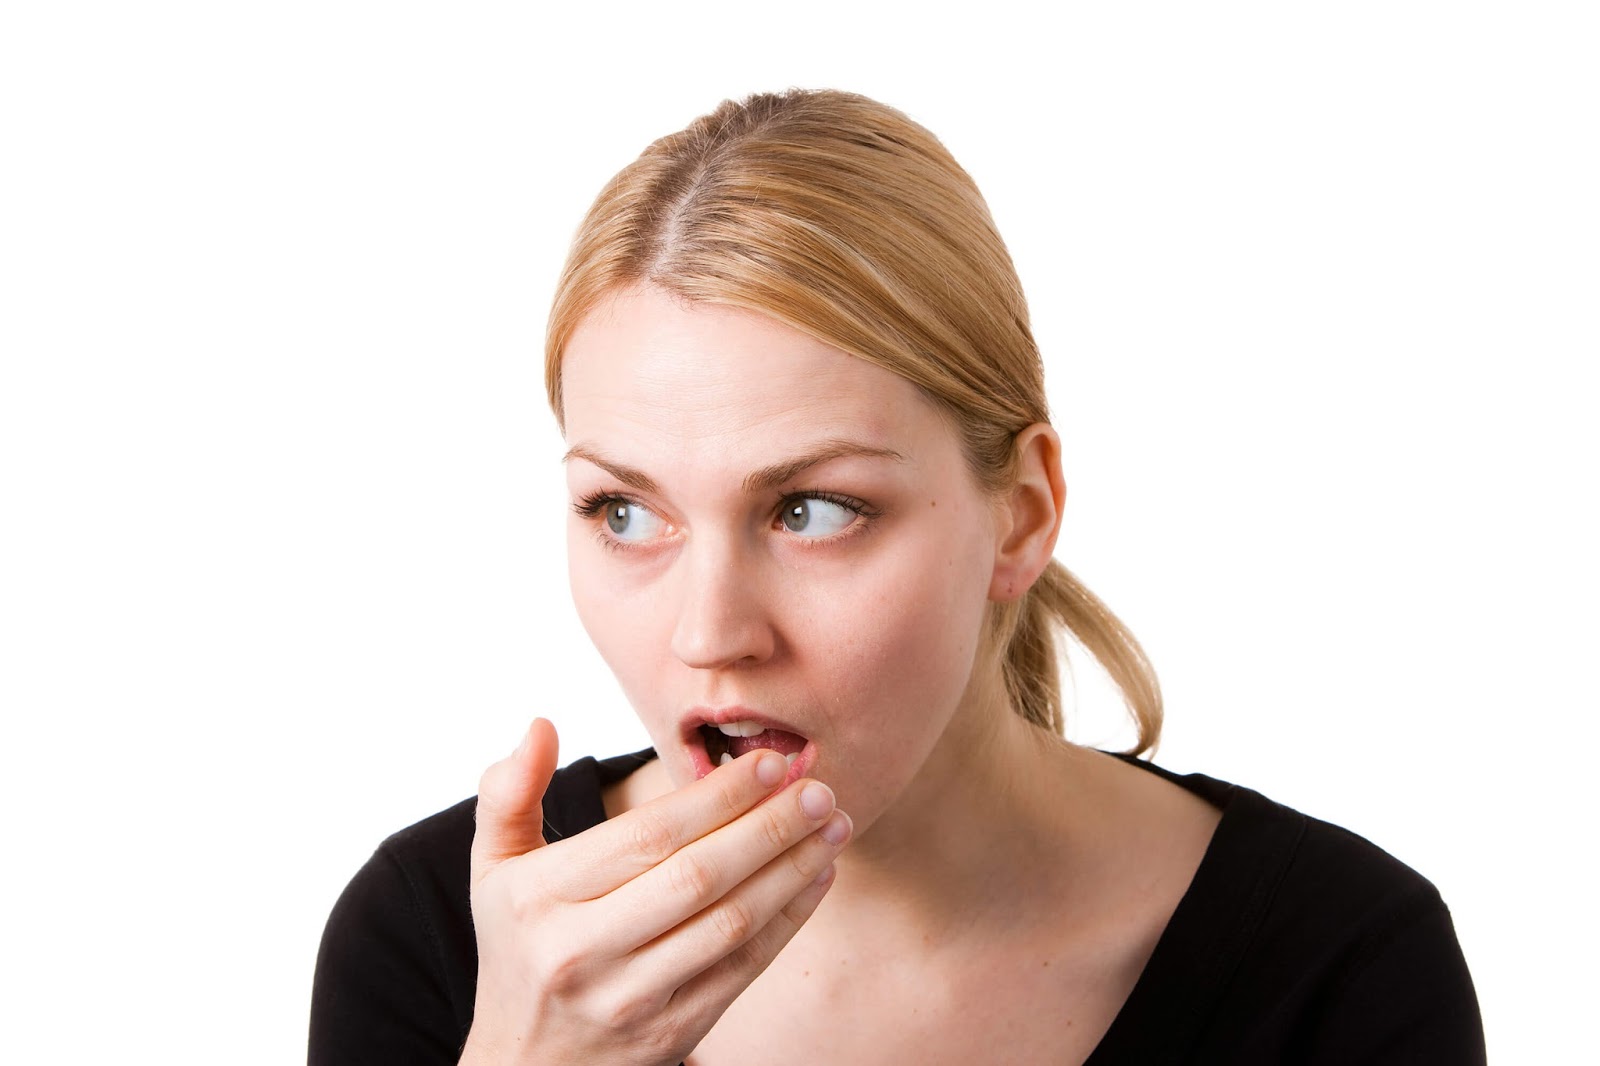 دعاء الشفاء من رائحة الفم إقرأ دعاء الشفاء من رائحة الفم و علاج رائحة الفم من القولون